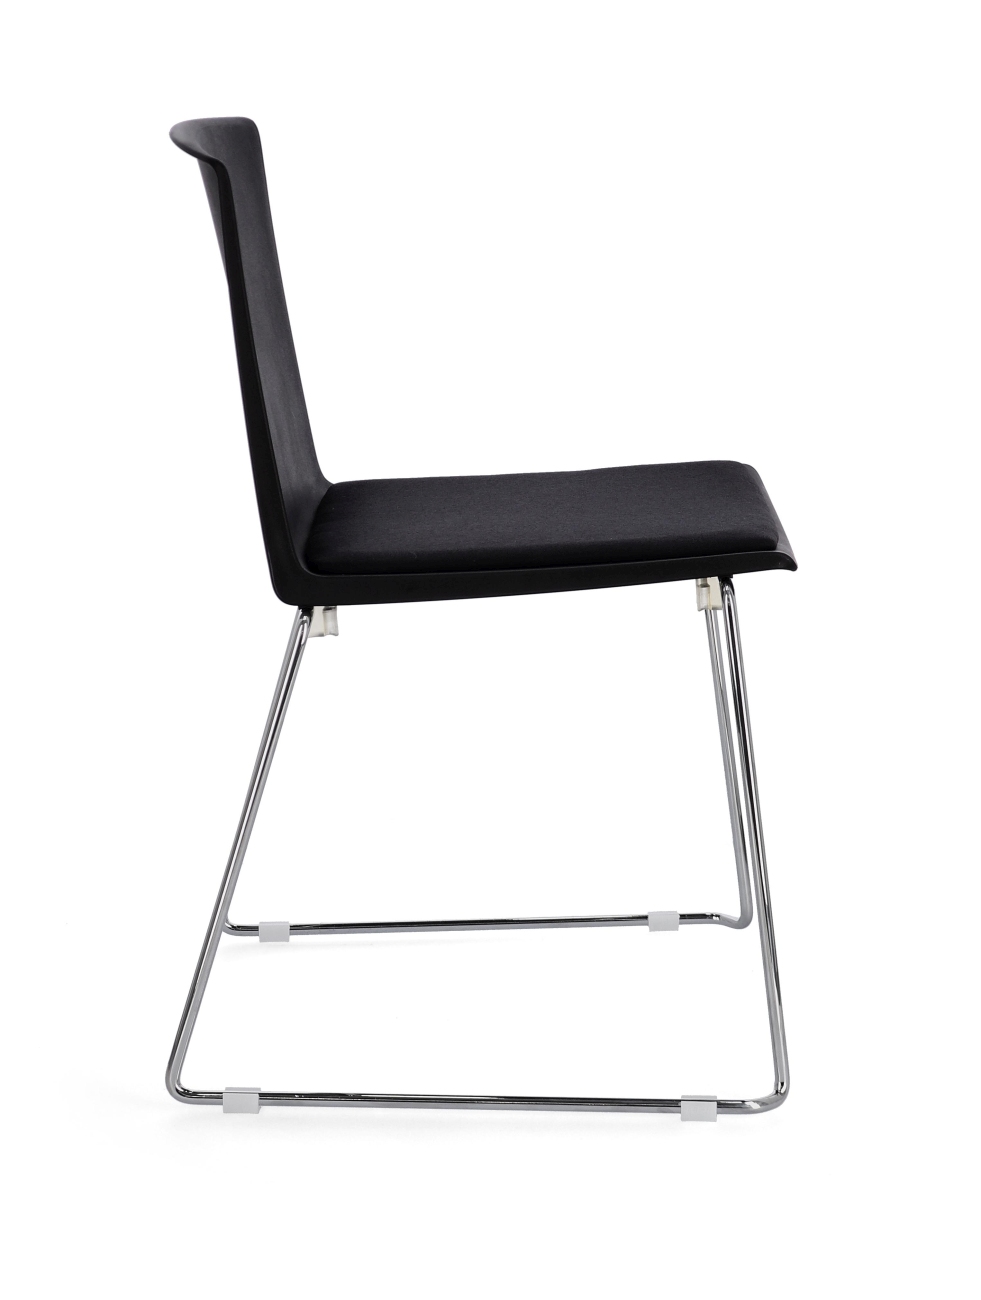 Der Esszimmerstuhl Giulia überzeugt mit seinem modernen Stil. Gefertigt wurde er aus Kunststoff, welches einen schwarzen Farbton besitzt. Das Gestell ist aus Metall und hat eine silberne Farbe. Der Stuhl besitzt eine Sitzhöhe von 46 cm.